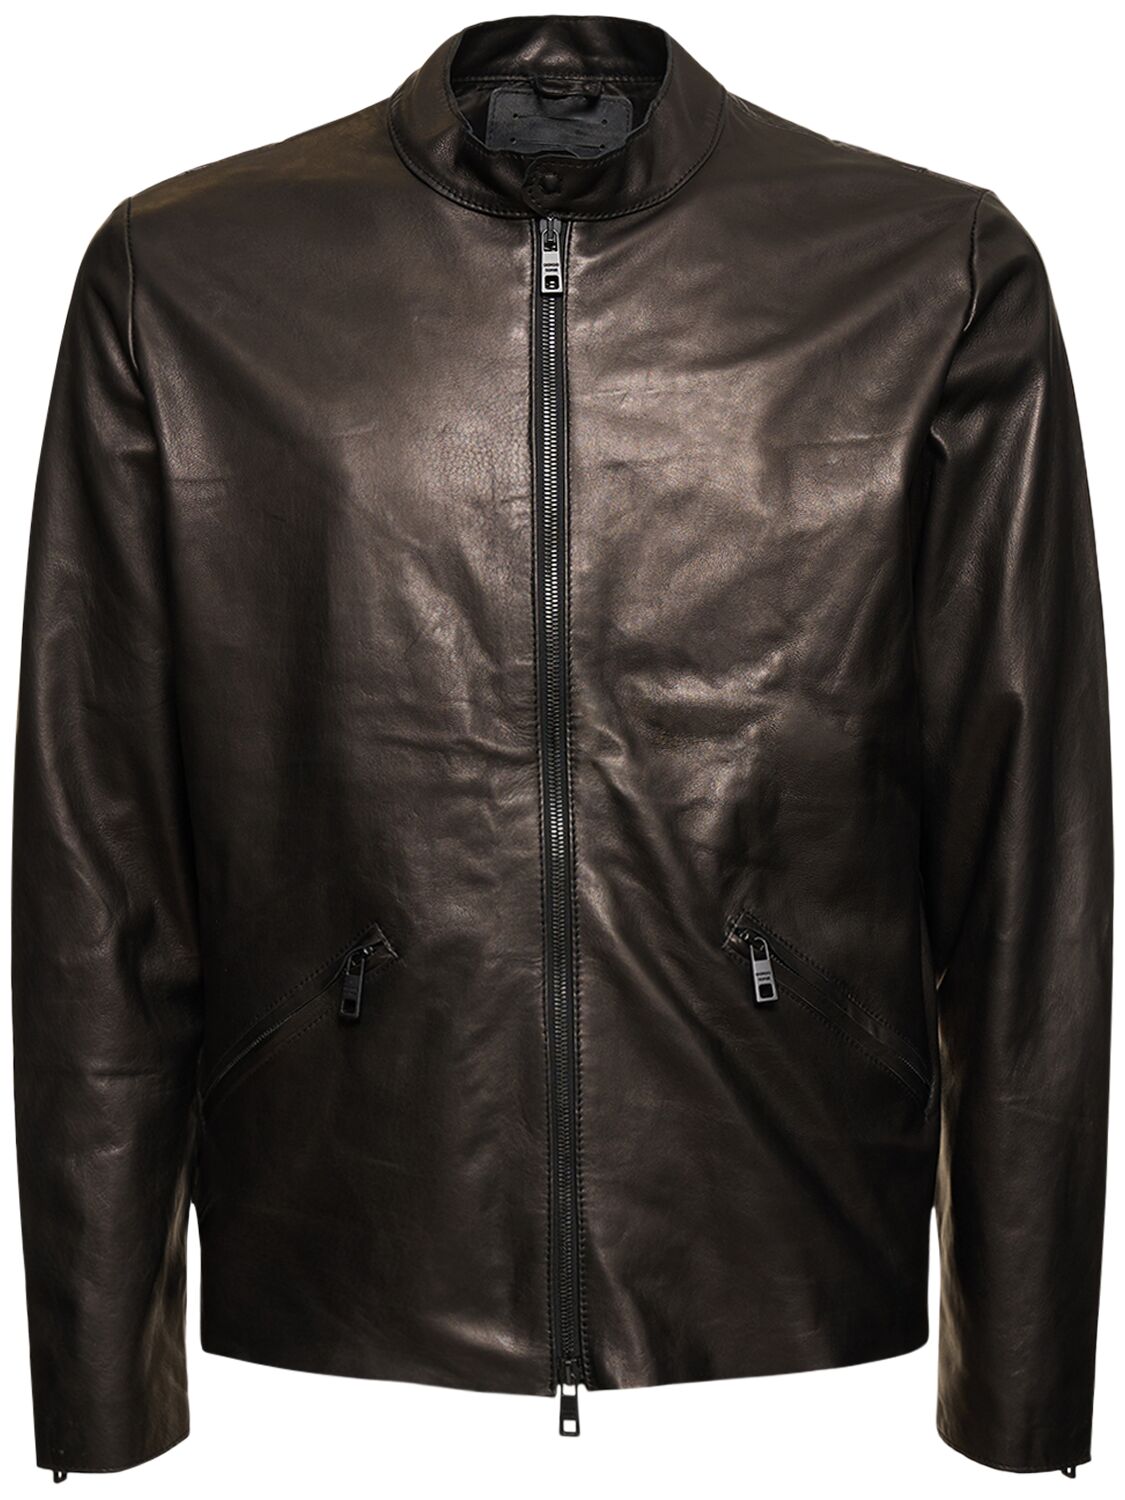 Image of Natural Leather Biker Jacket